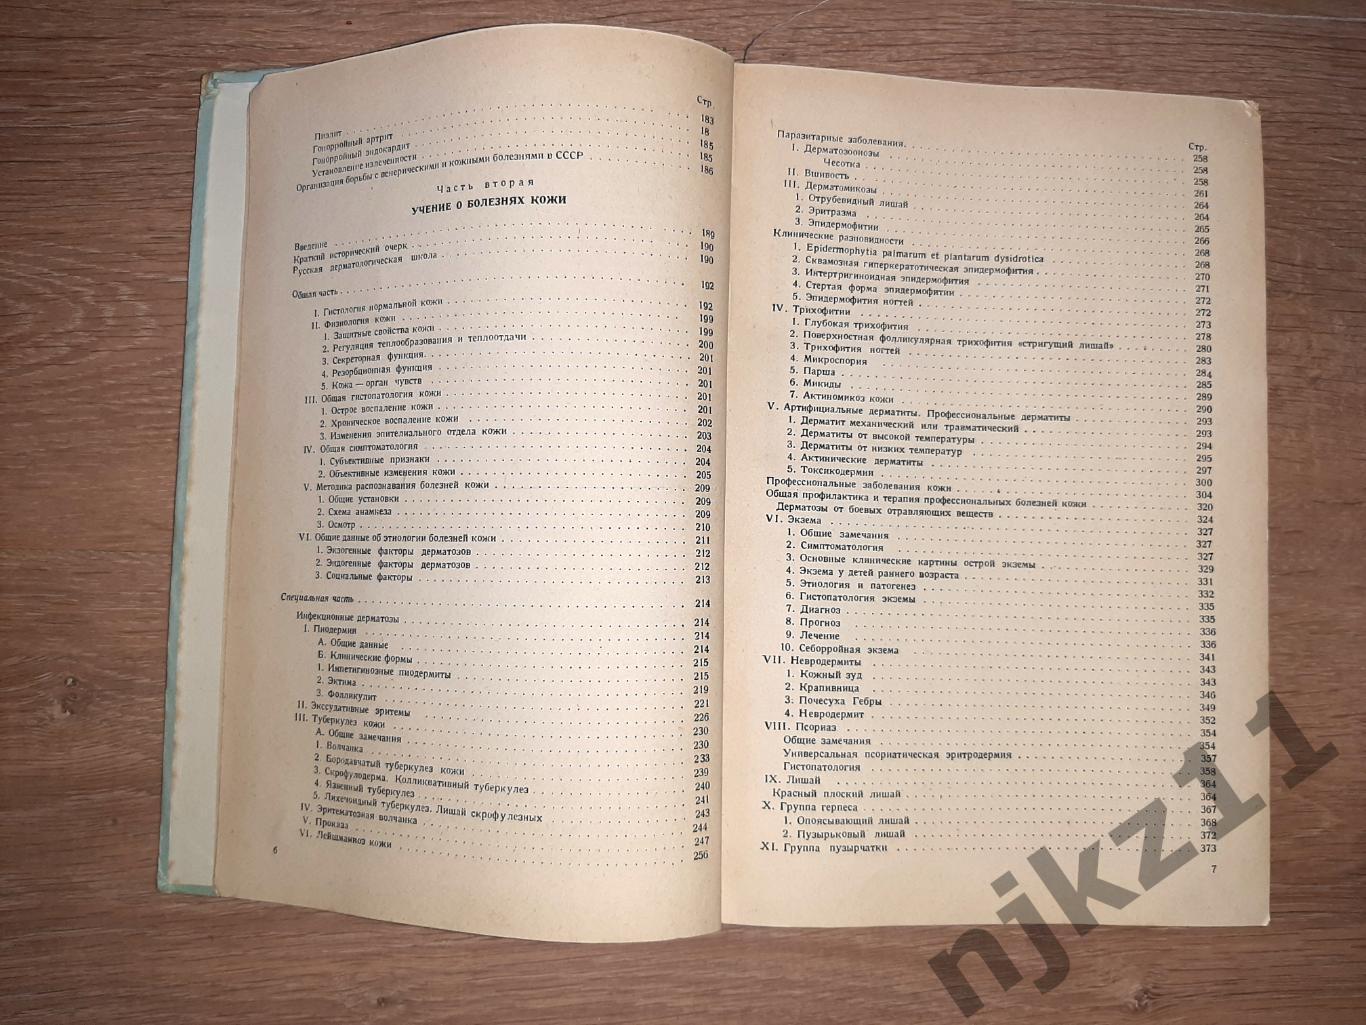 Григорьев, П.С. Краткий курс венерических и кожных болезней 1946г 4